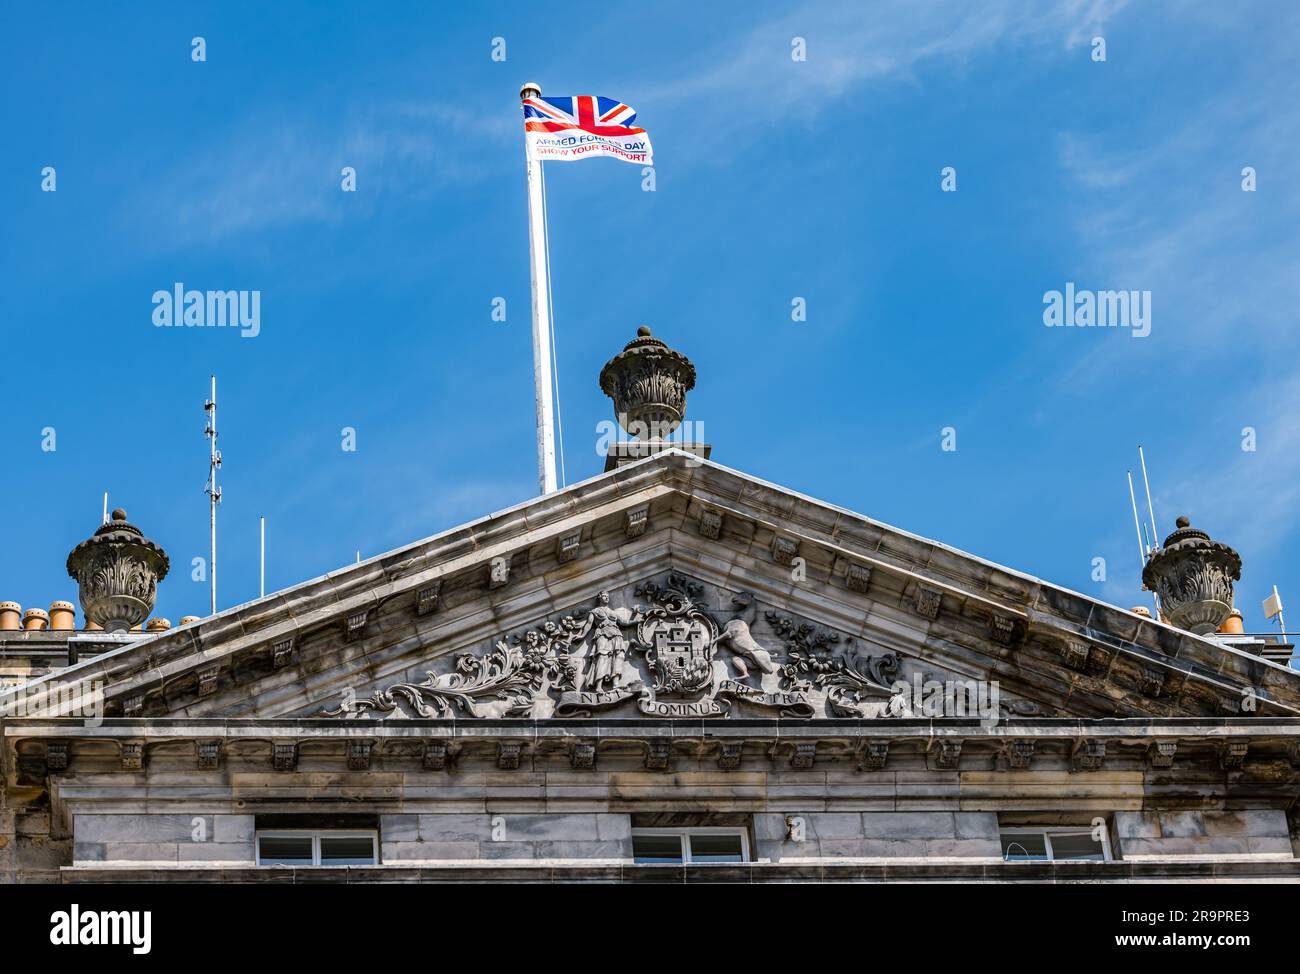 Bandiera che sventola sulle camere del Consiglio comunale per celebrare la giornata delle forze armate, Edimburgo, Scozia, Regno Unito Foto Stock